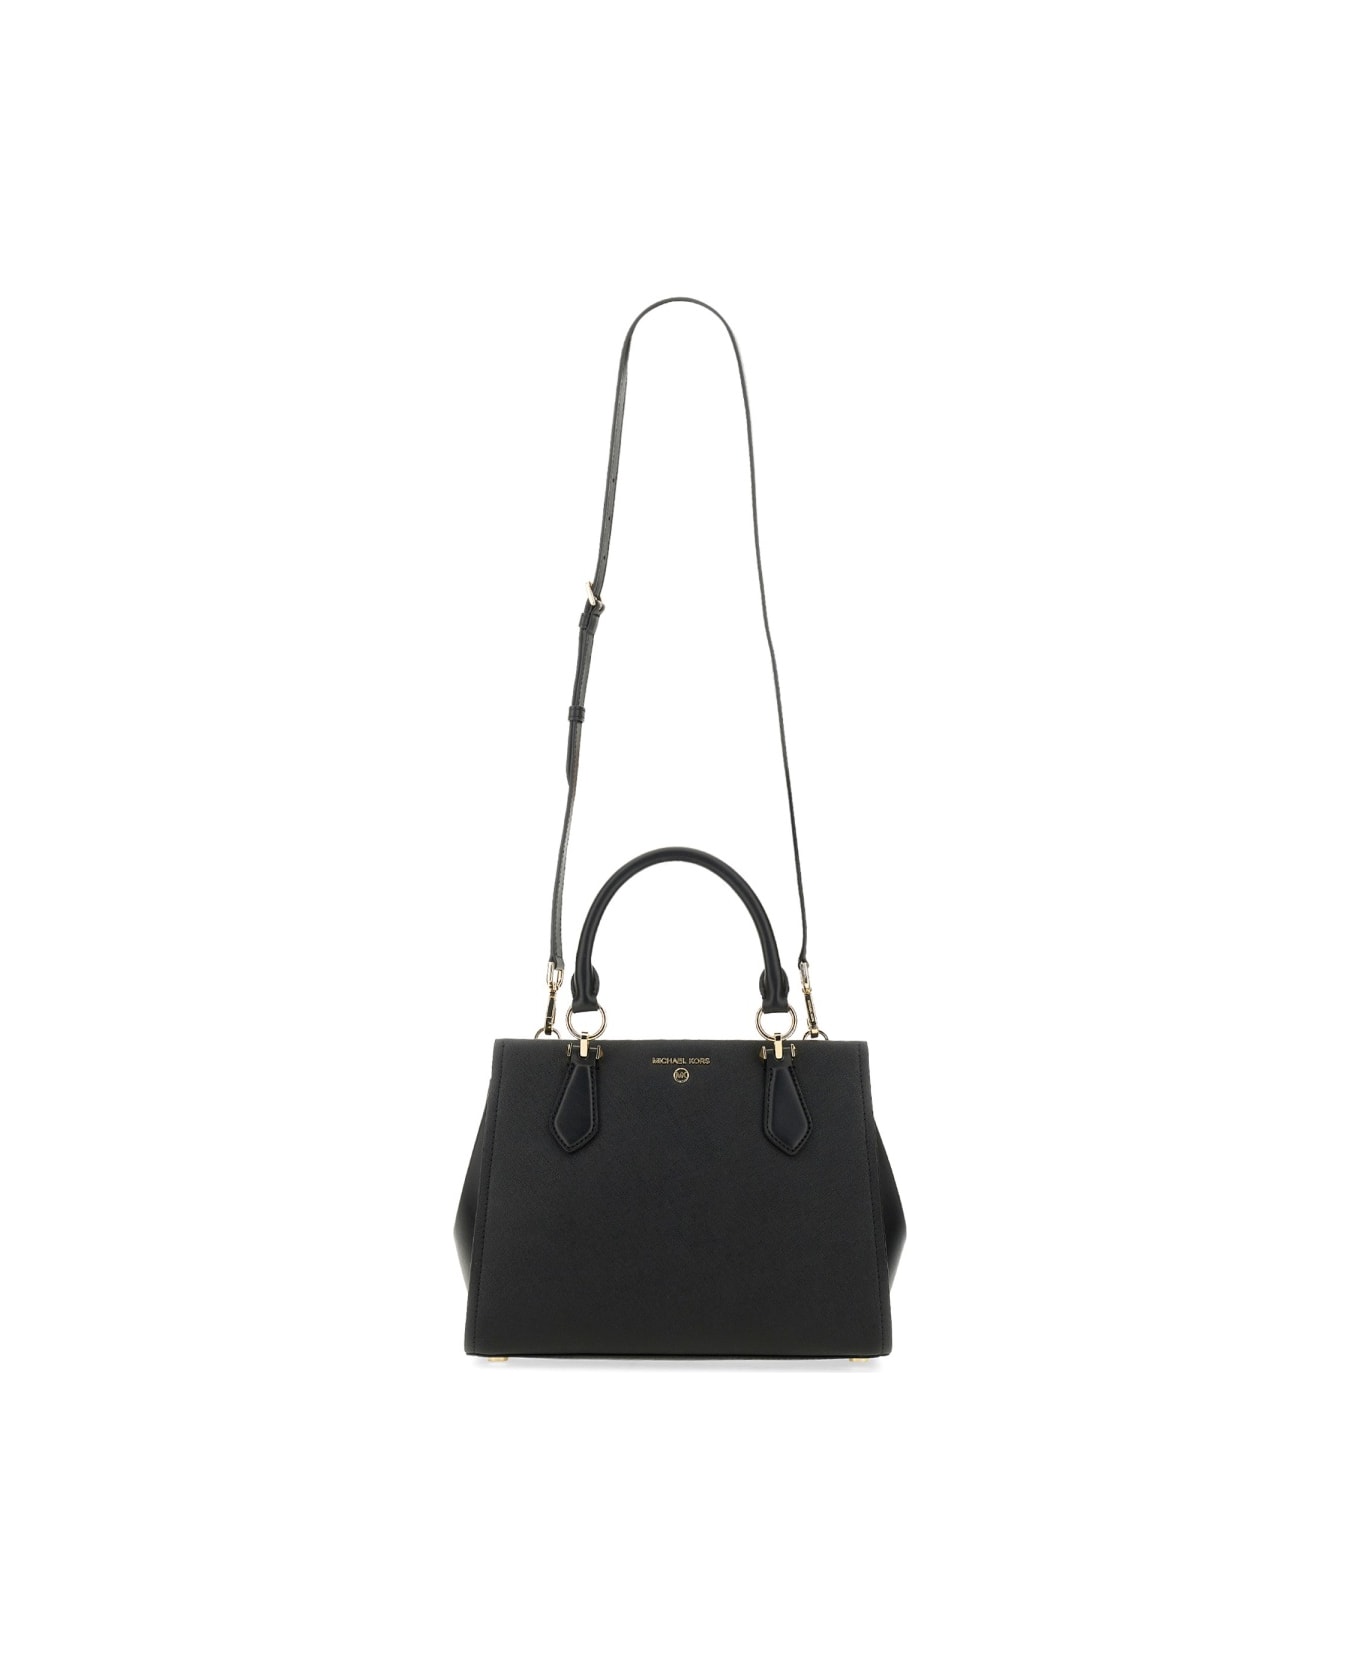 Michael Kors Handbag " Marilyn" - BLACK